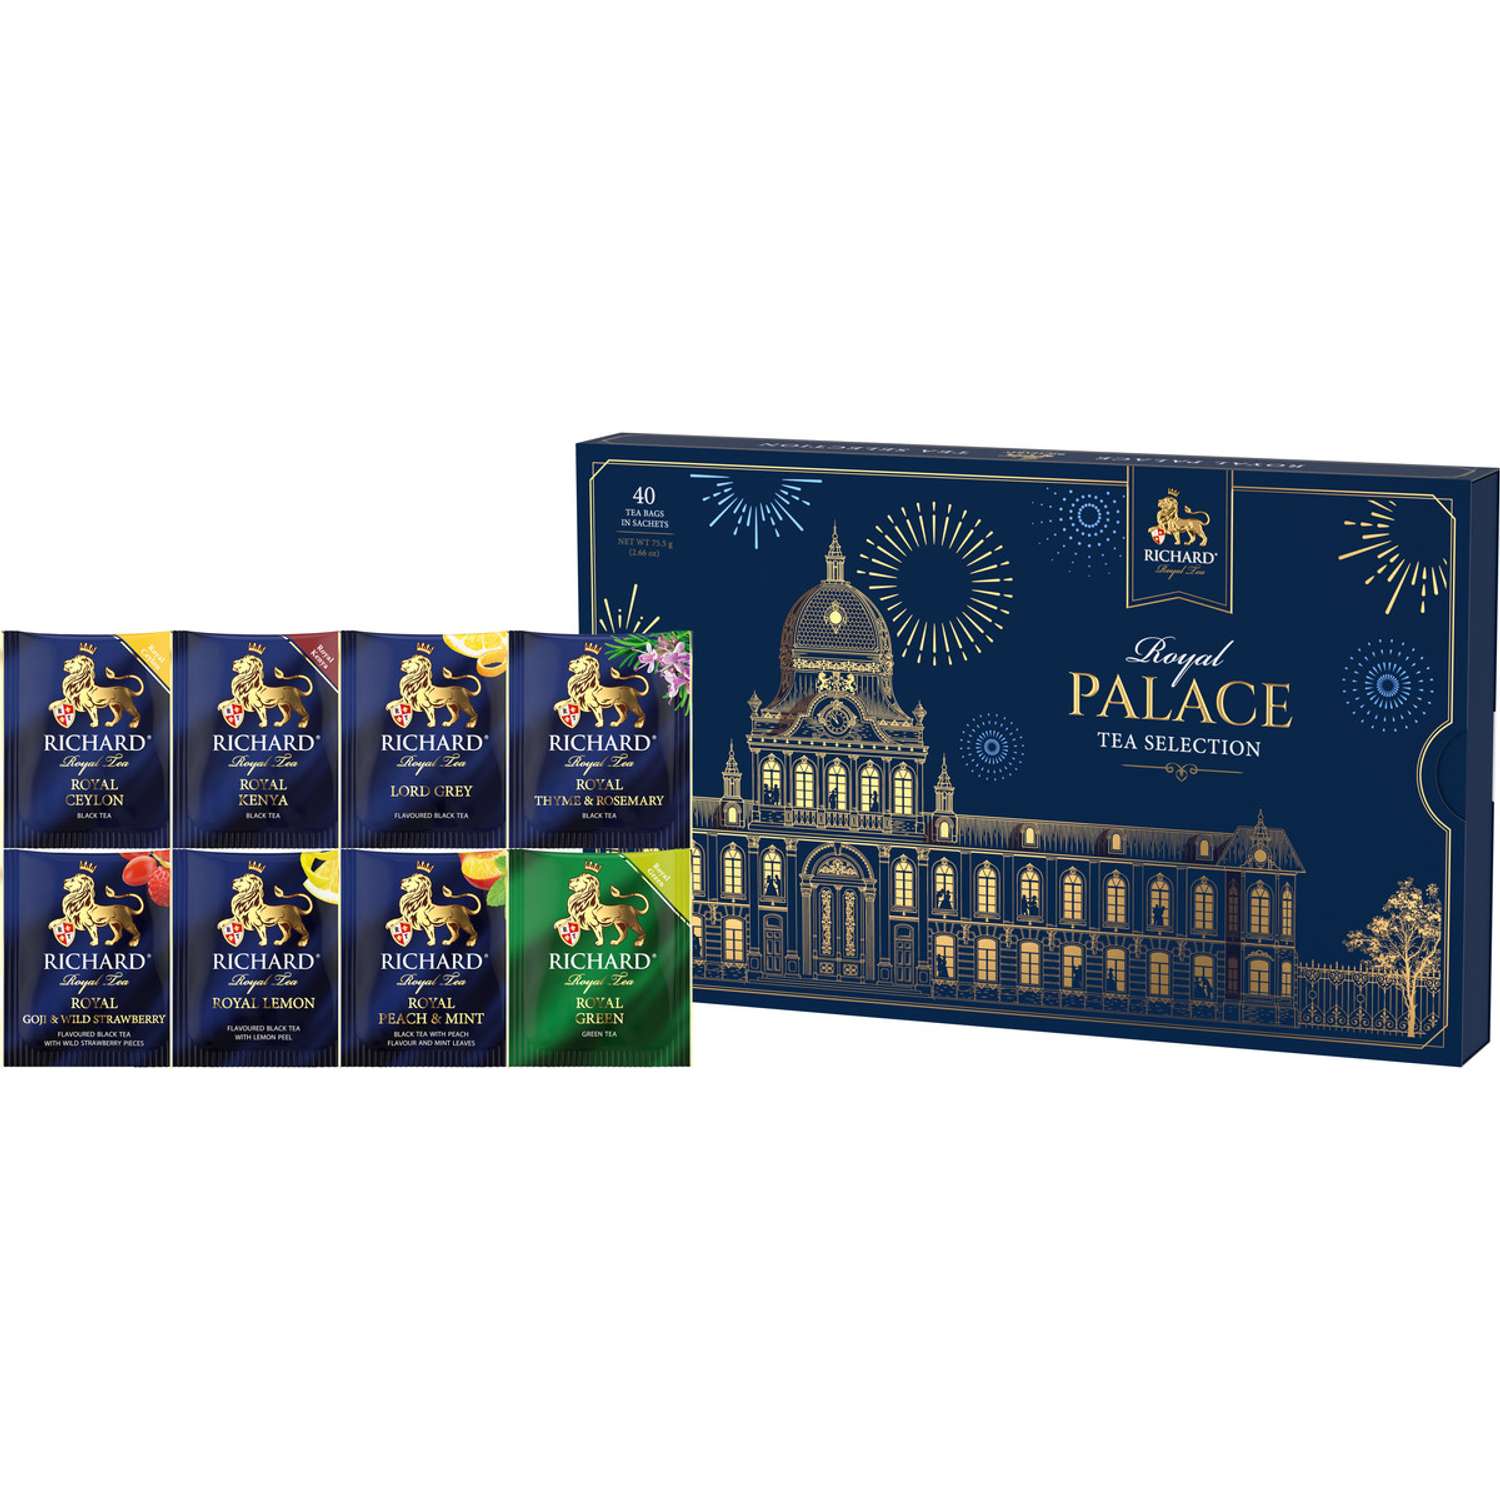 Чайное ассорти Richard Royal Palace tea selection 40 пакетиков 8 вкусов подарочная упаковка - фото 3